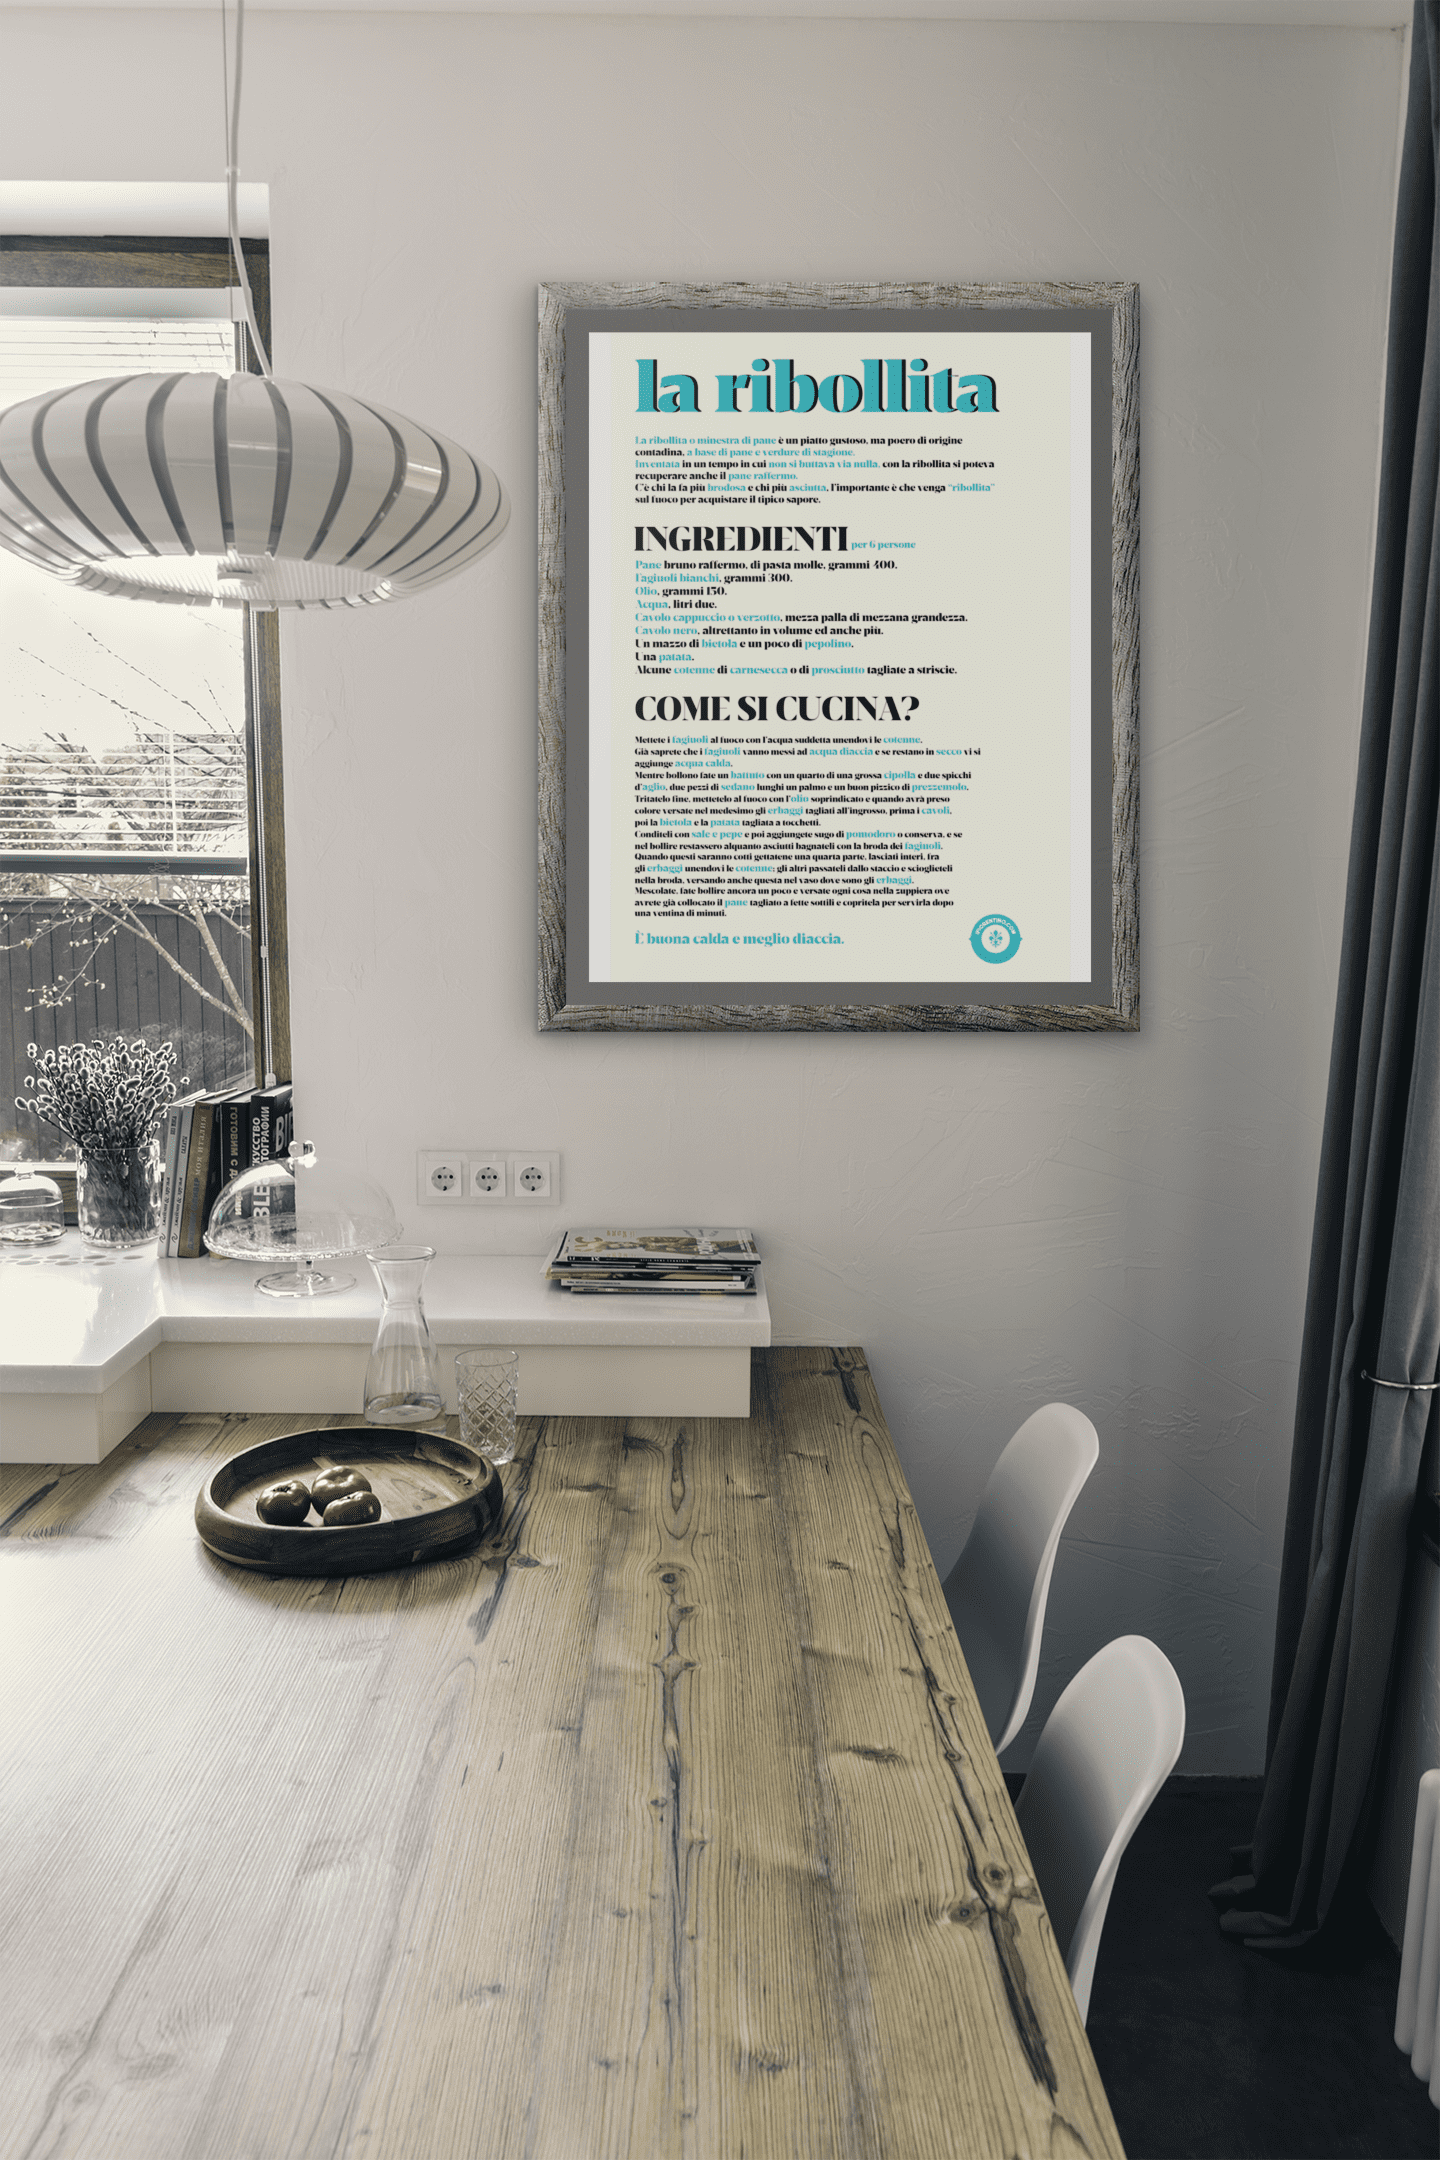 LA RIBOLLITA - poster fiorentini - poster firenze - regalo fiorentino - fiorentino  - foppeddittelo